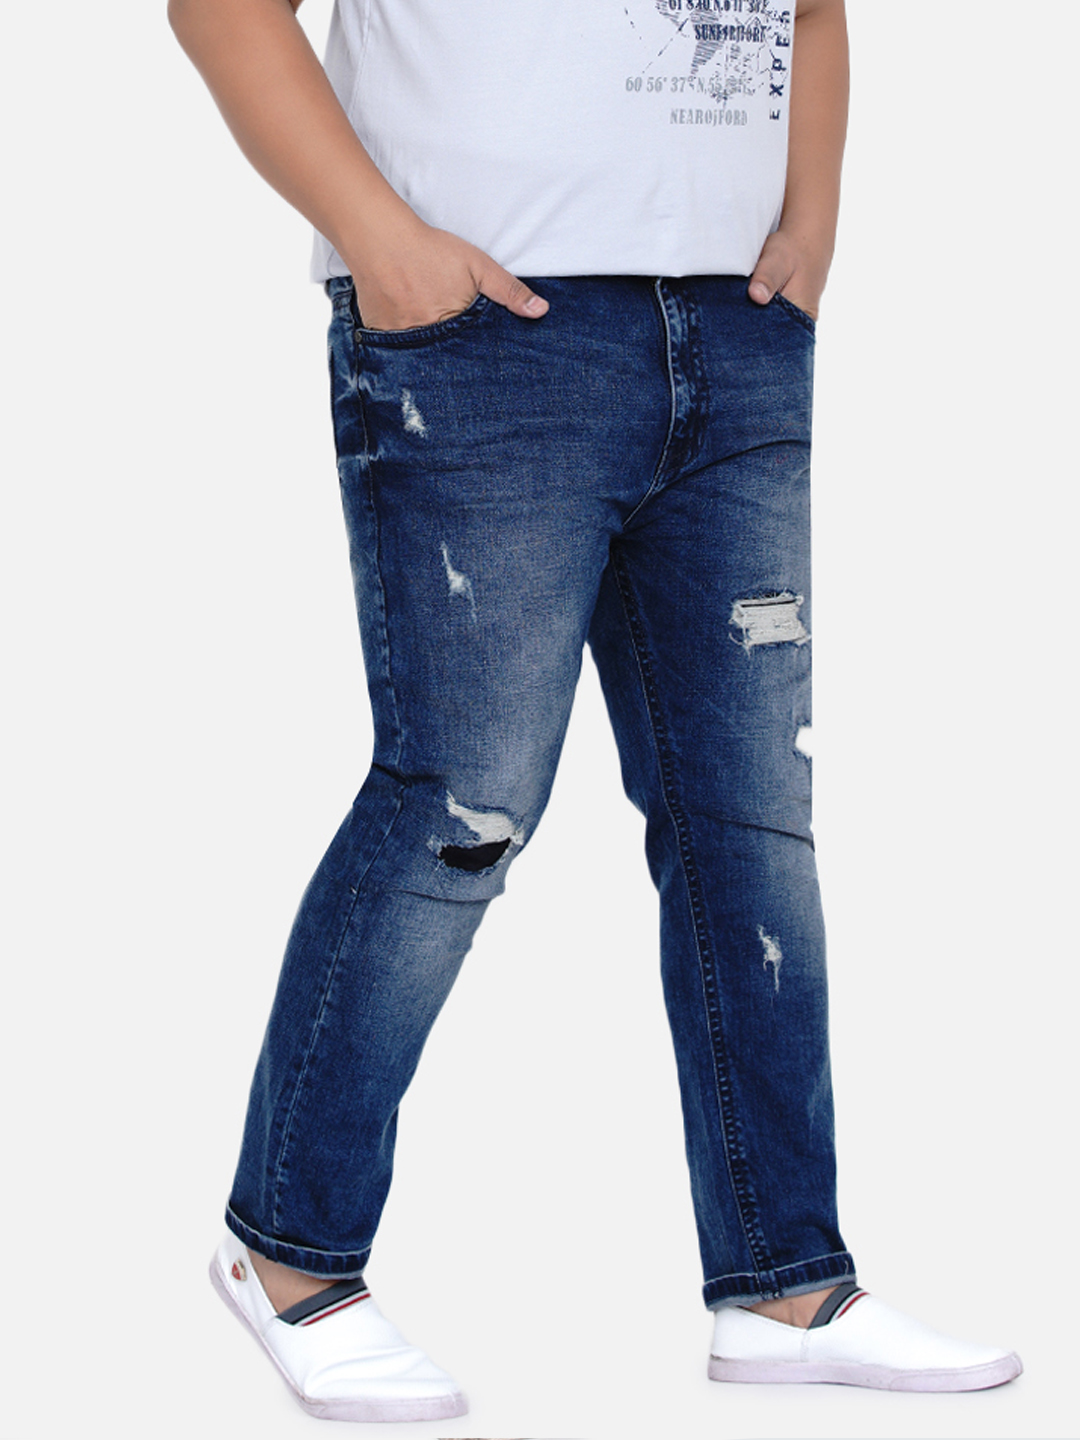 bottomwear/jeans/JPJ12185/jpj12185-1.jpg